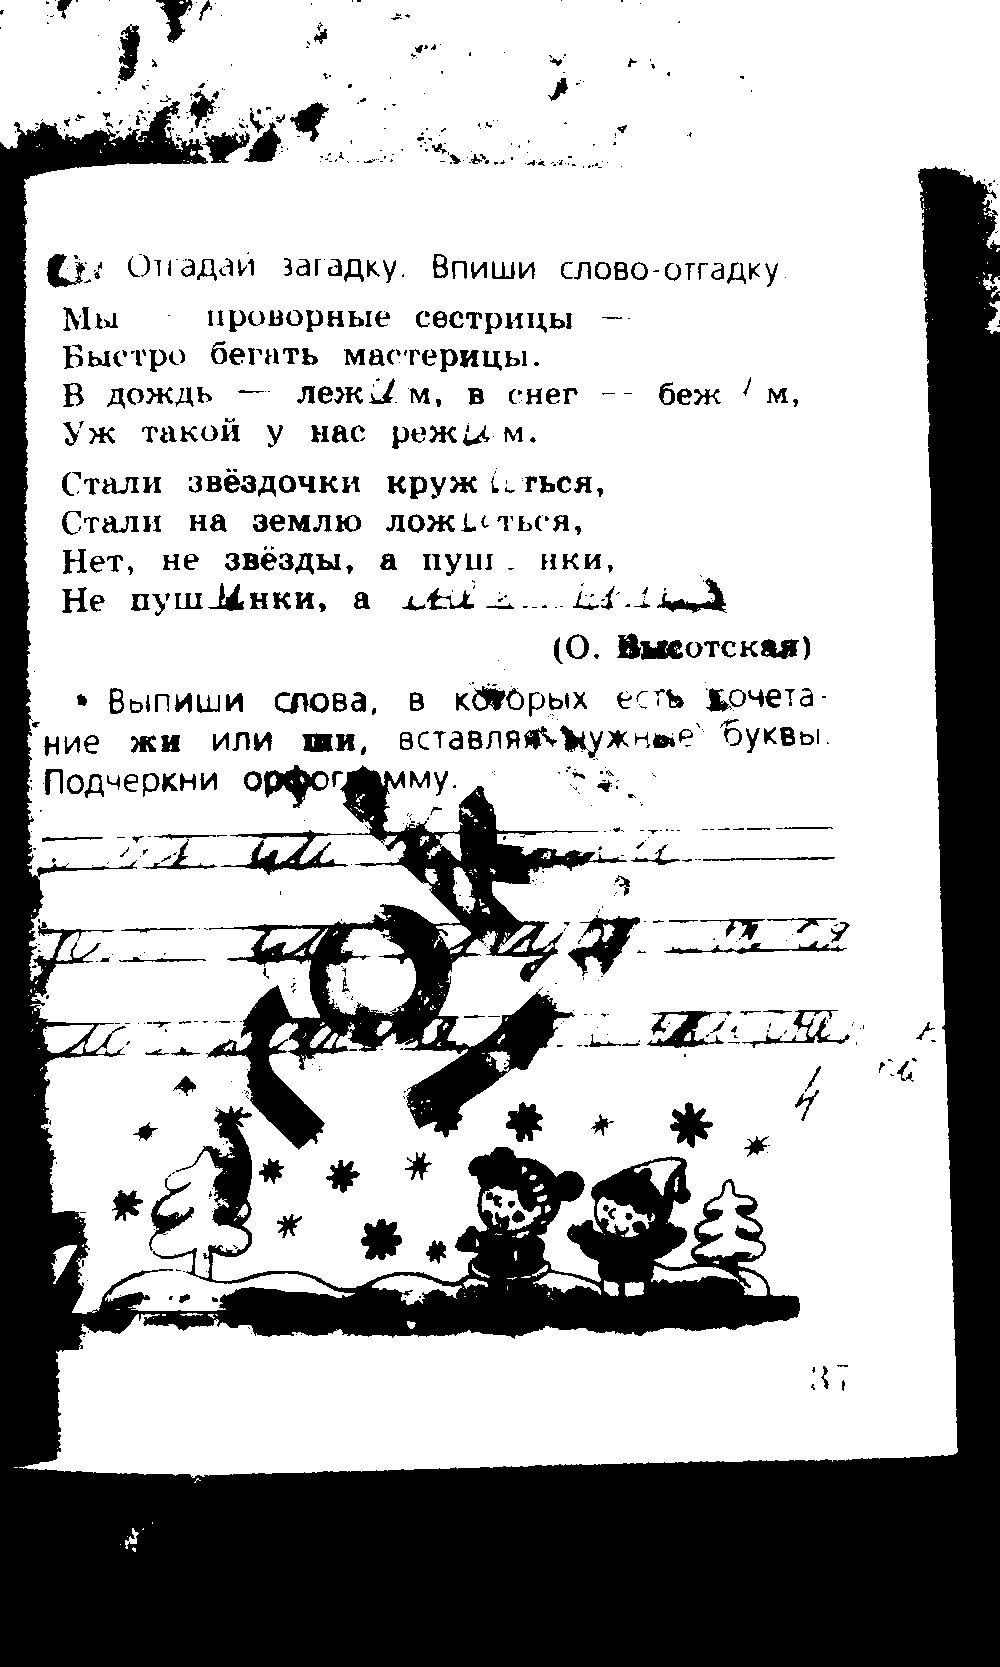 ГДЗ Русский язык 2 класс - стр. 37